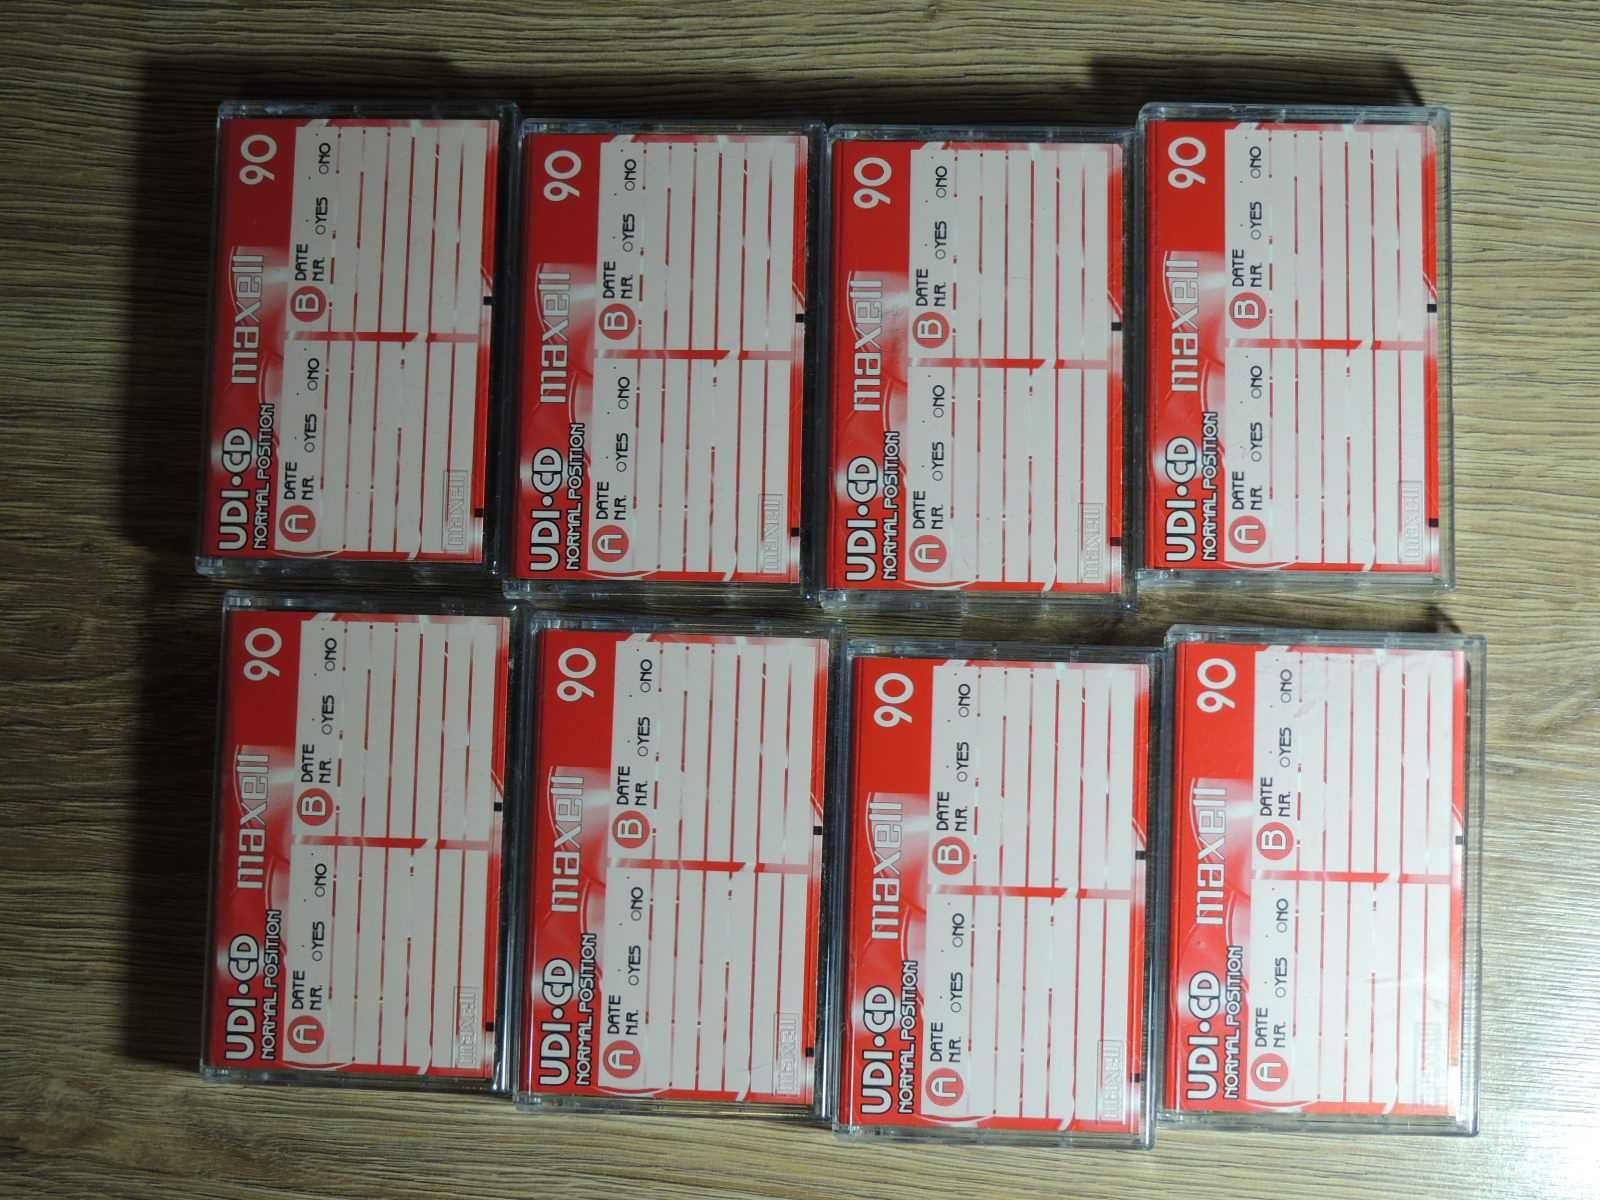 Maxell UDI-CD 90, zestaw 8 kaset